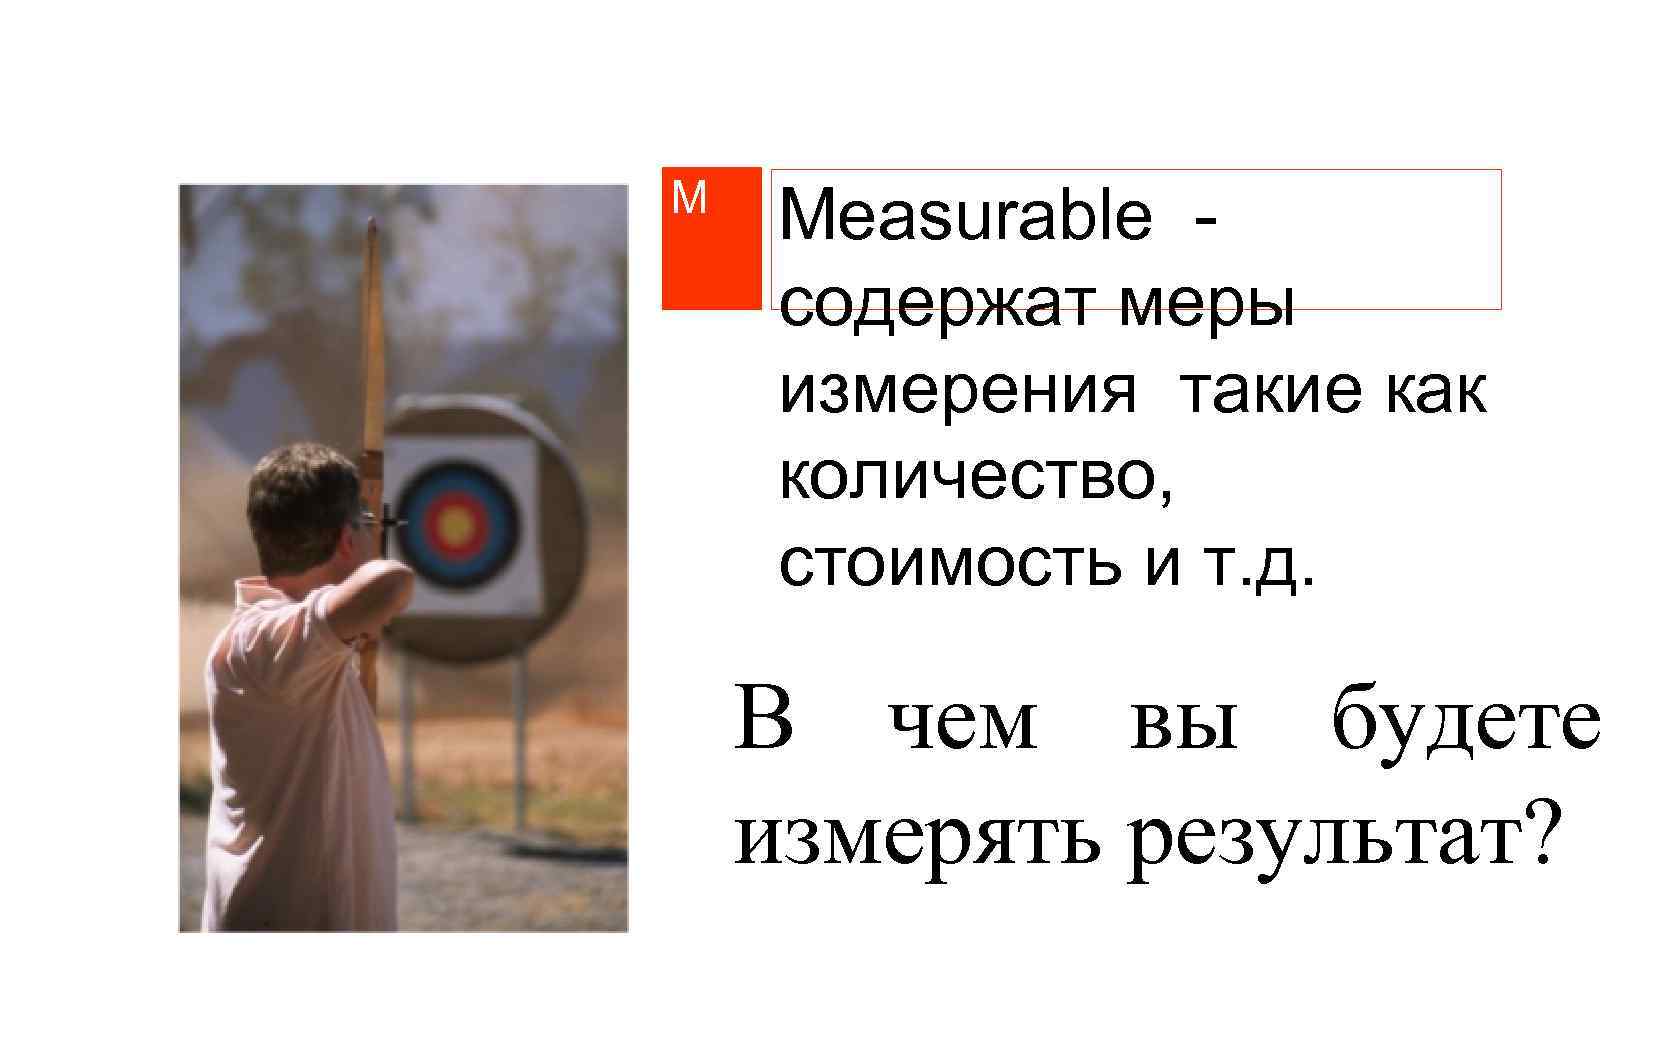 M Measurable содержат меры измерения такие как количество, стоимость и т. д. В чем